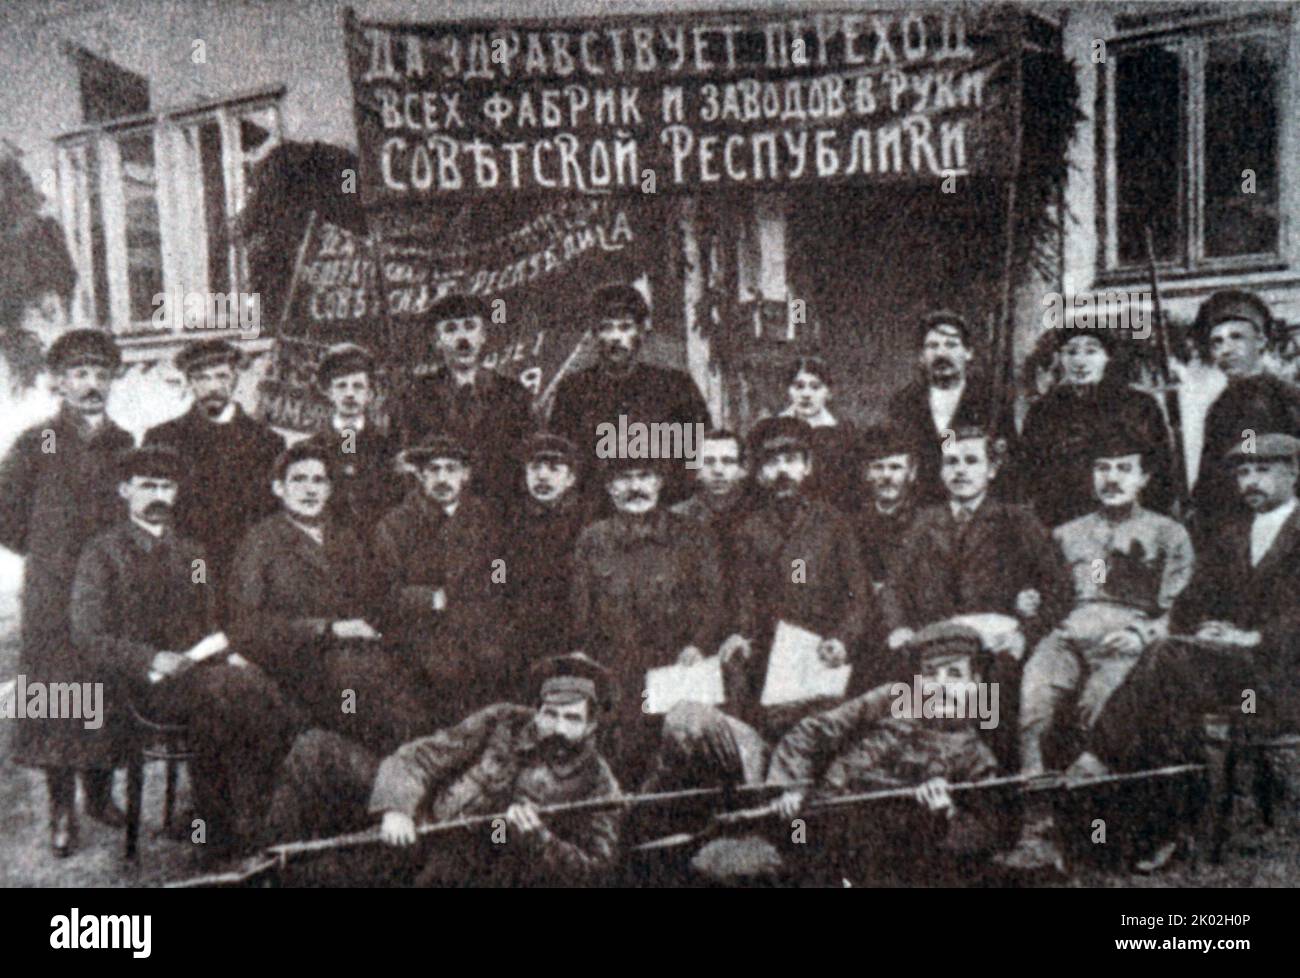 Gruppe der Likino Fabrik, die an ihrer Nationalisierung teilnahm. November 1917. Stockfoto